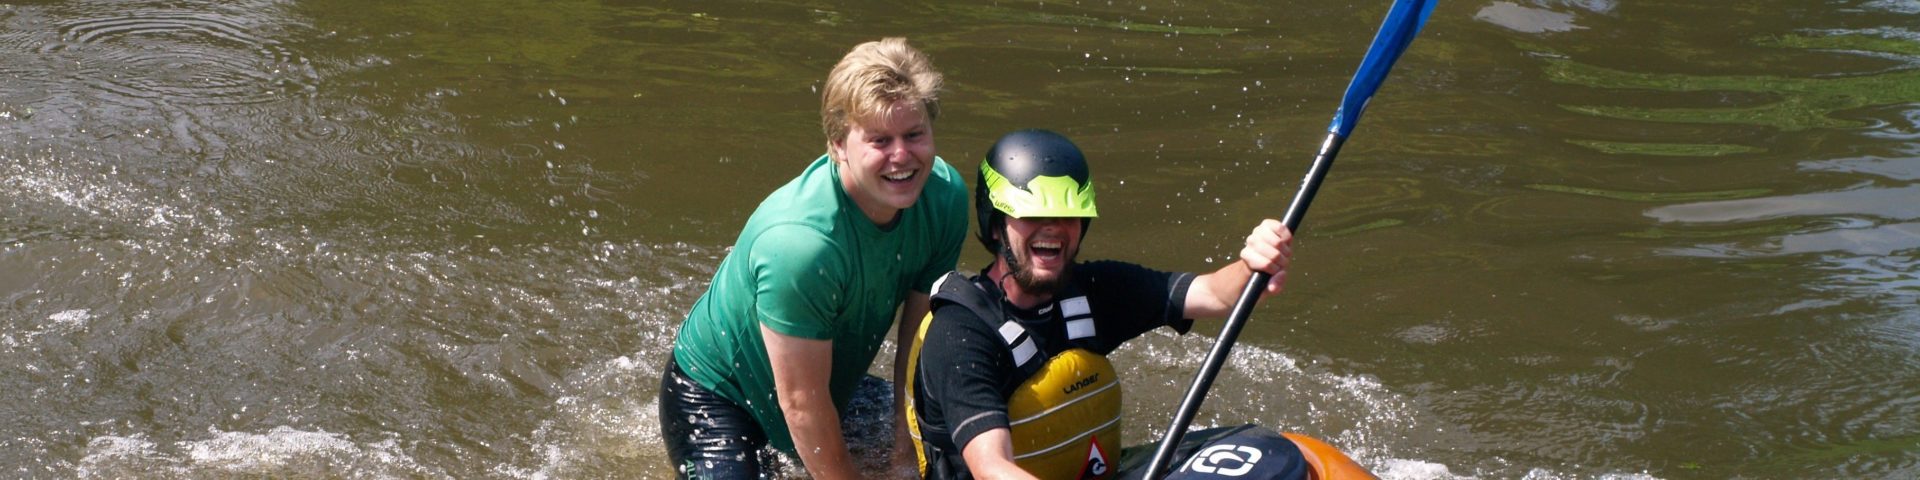 OSMO: kayaking workshop